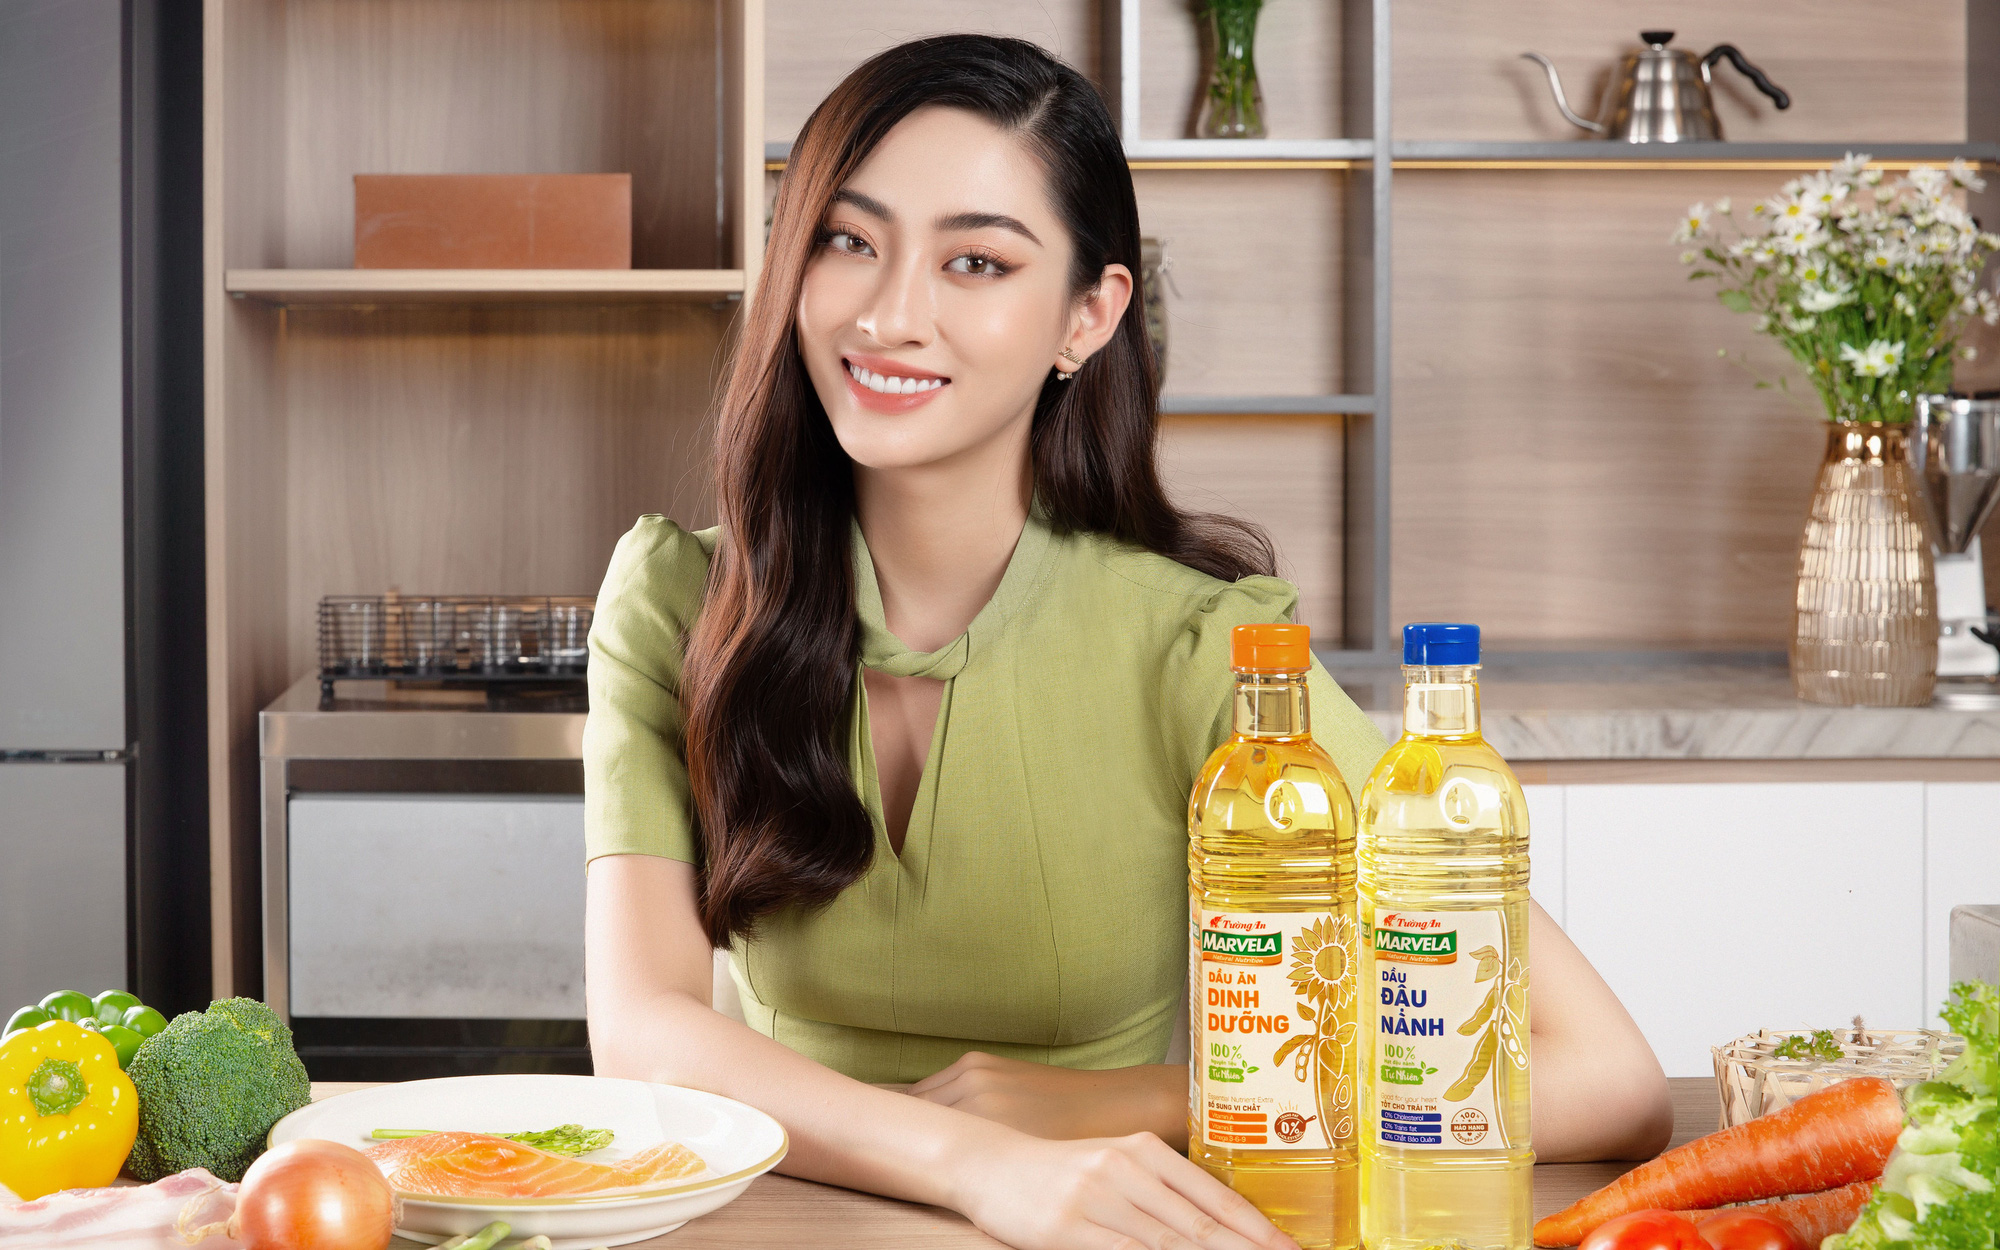 Bật mí 3 bí quyết ăn uống “healthy” của hoa hậu Lương Thùy Linh